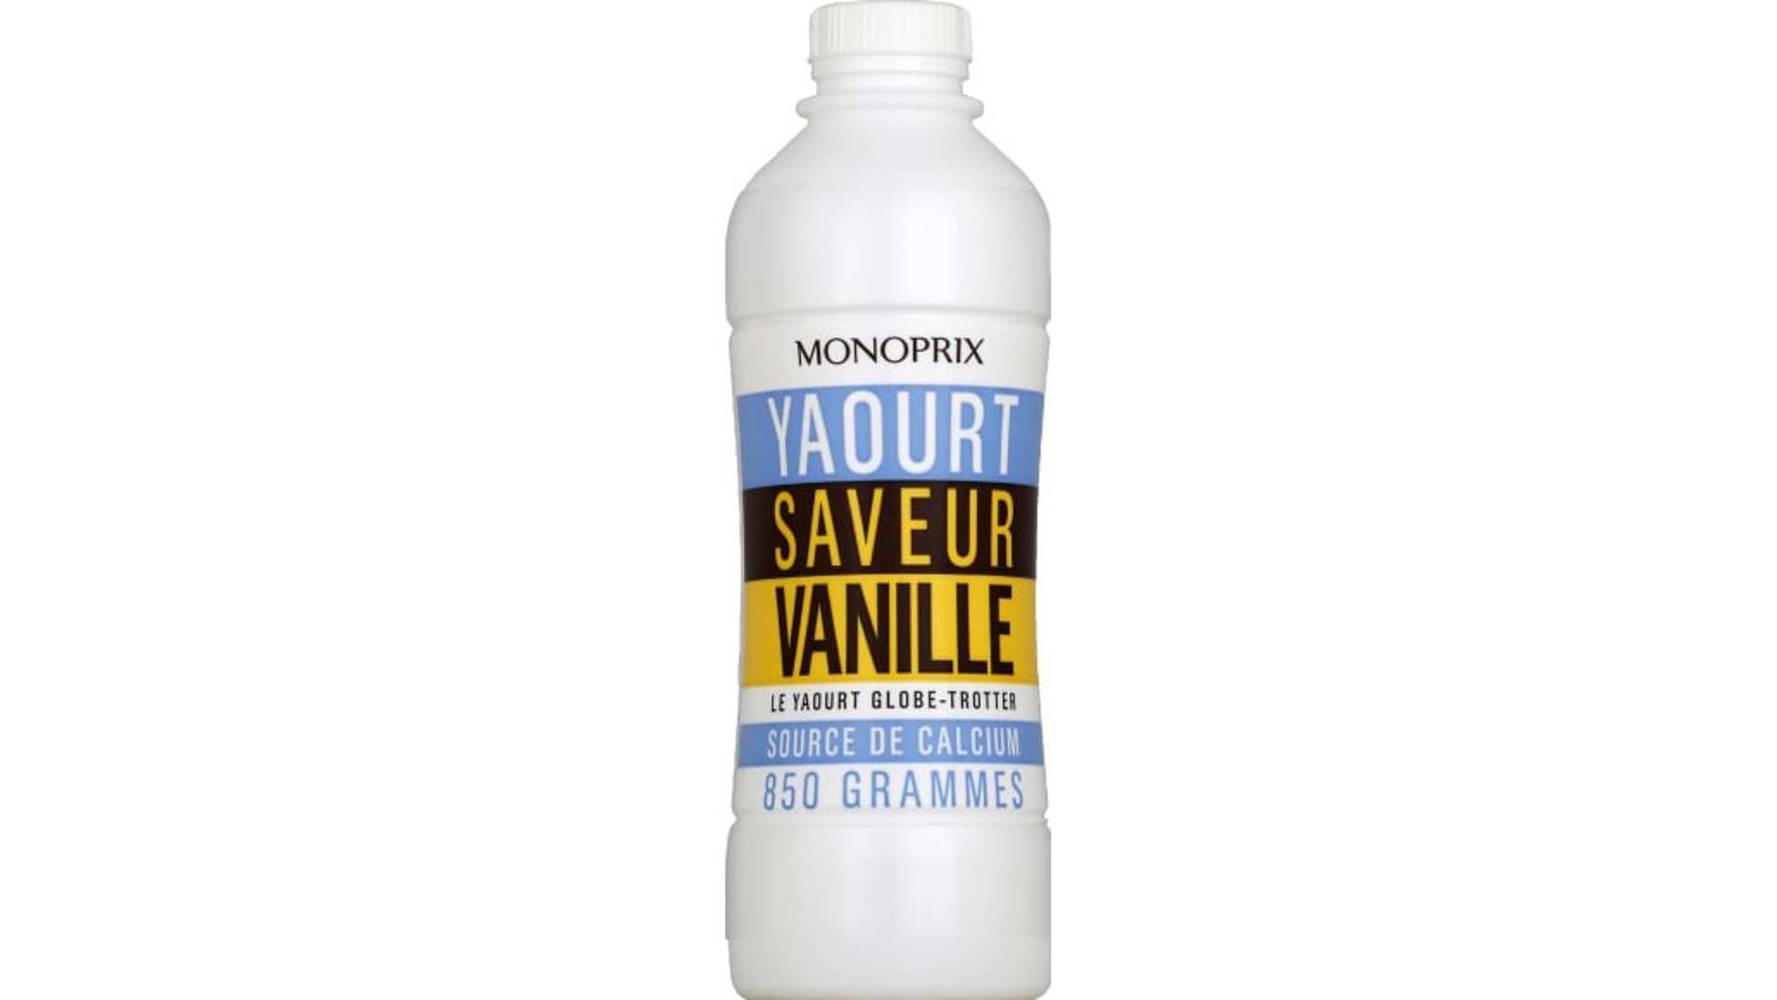 Monoprix Yaourt saveur vanille La bouteille de 850 g